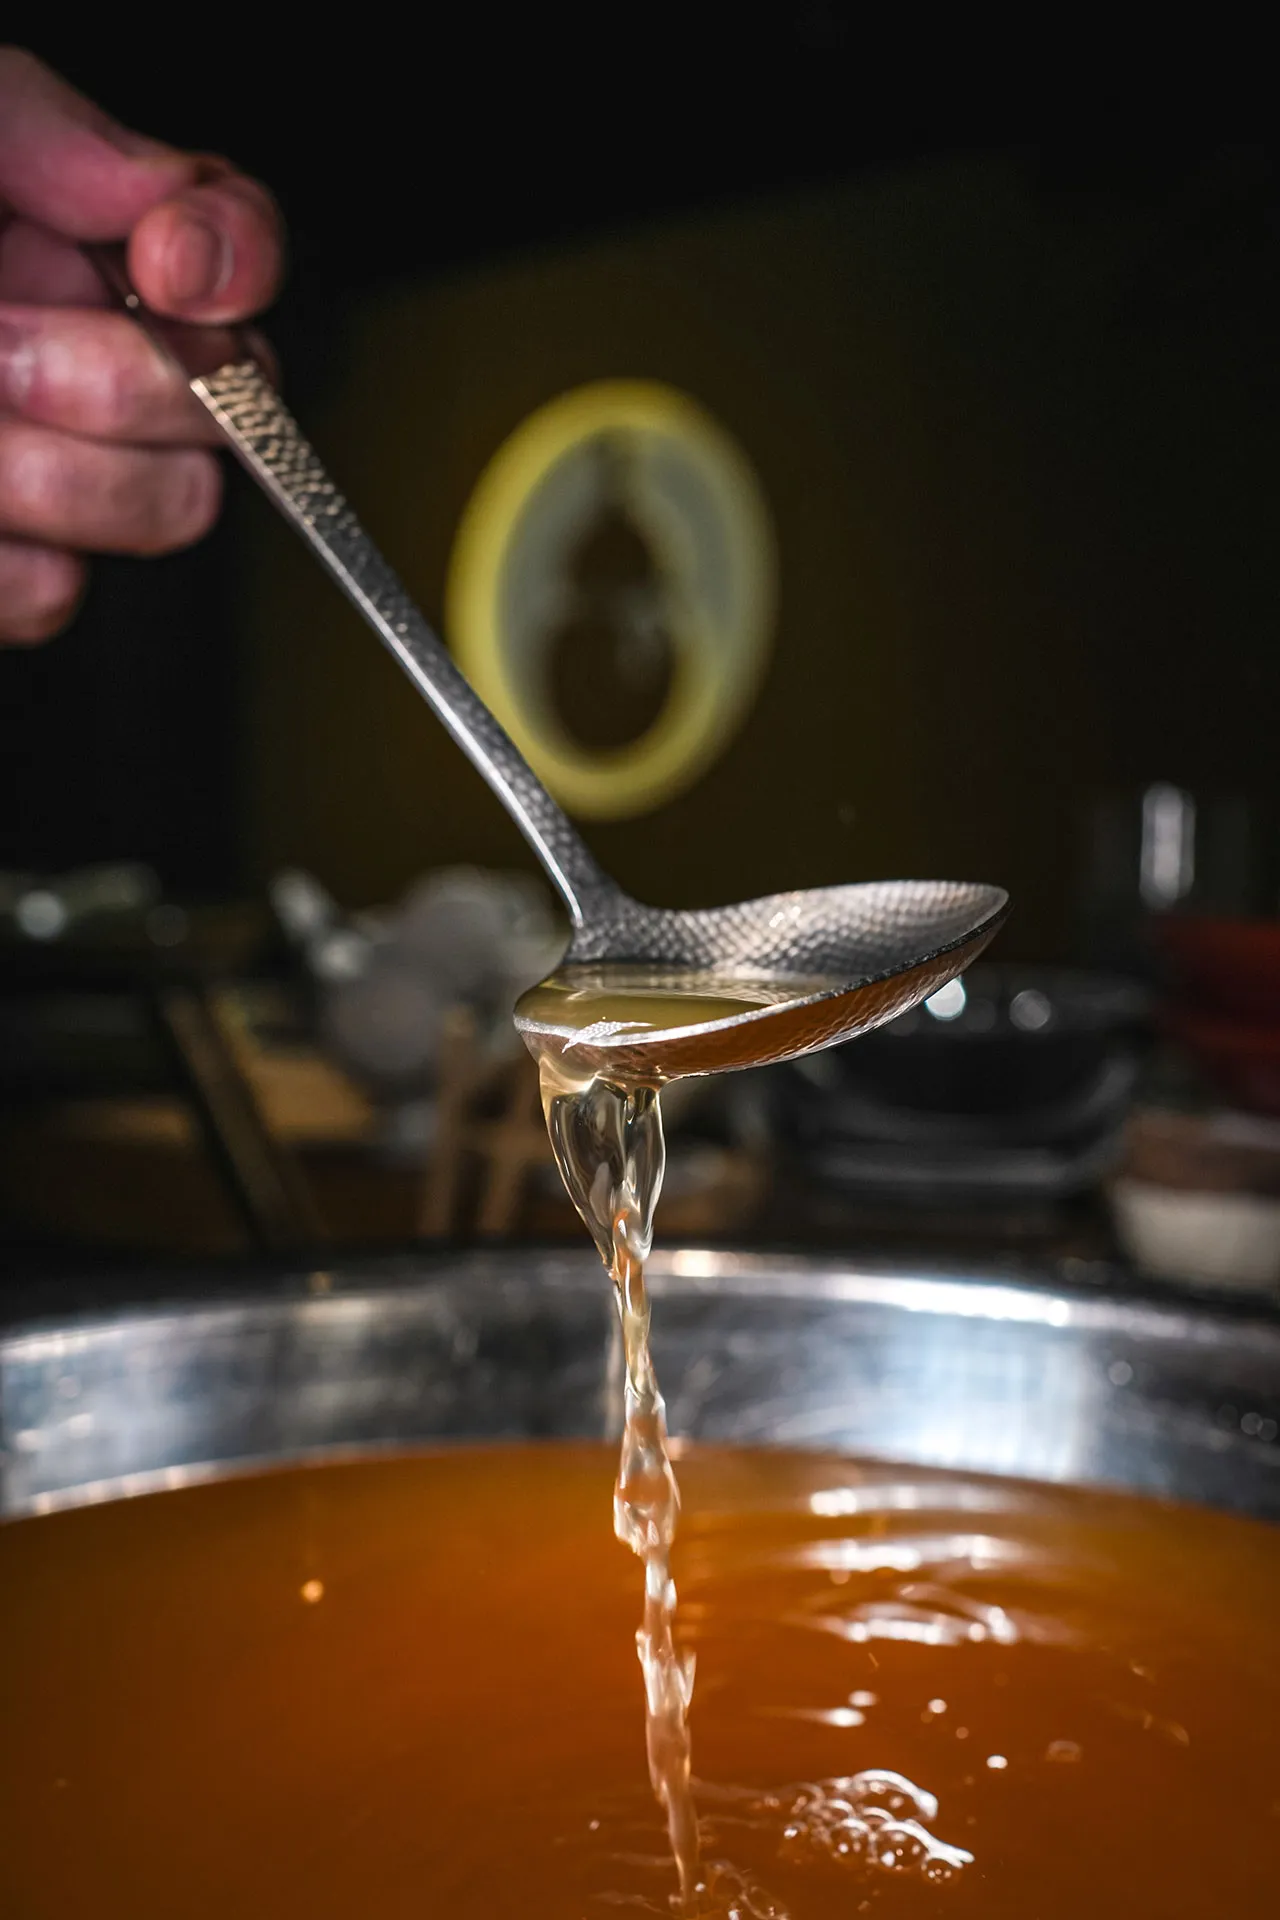 Preparing tsuyu (dipping sauce)